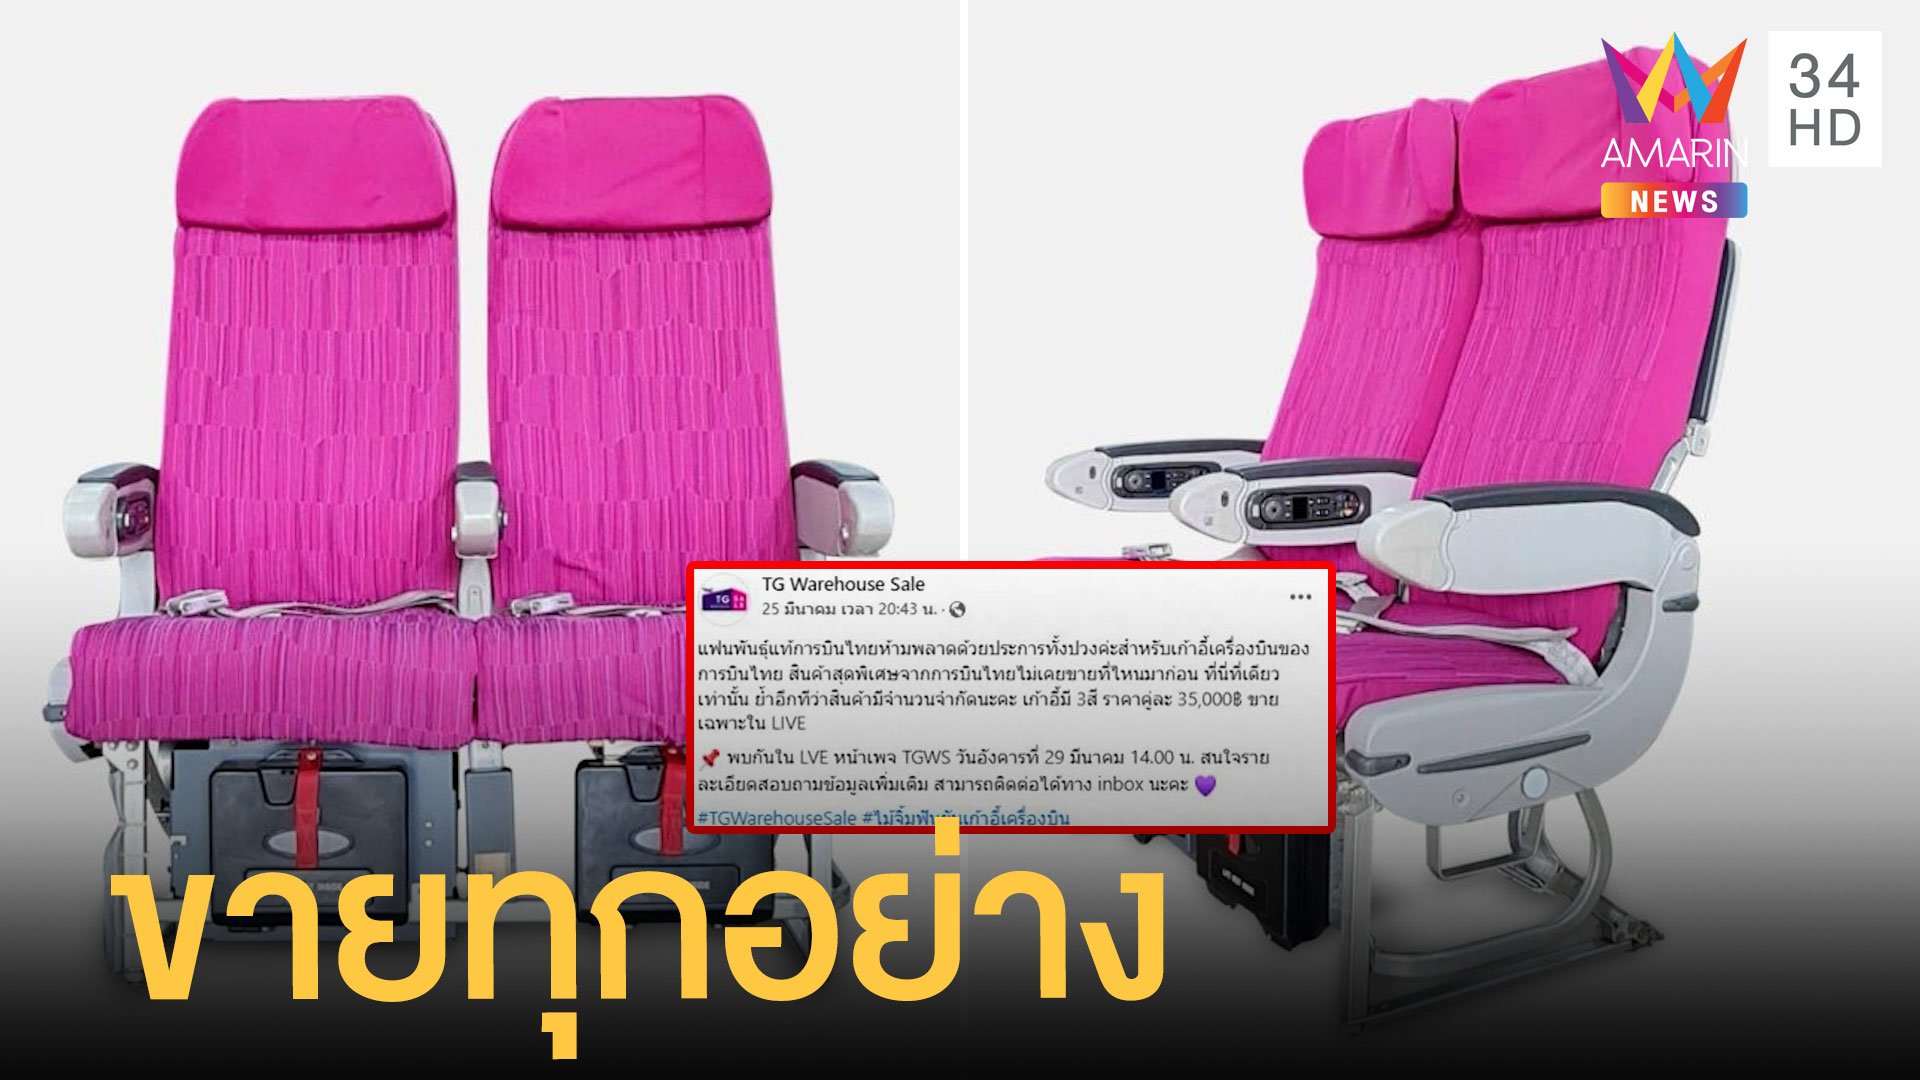 แฟนพันธุ์แท้พลาดได้ไง 'เก้าอี้เครื่องบิน' การบินไทยขายทุกอย่าง | ข่าวอรุณอมรินทร์ | 29 มี.ค. 65 | AMARIN TVHD34